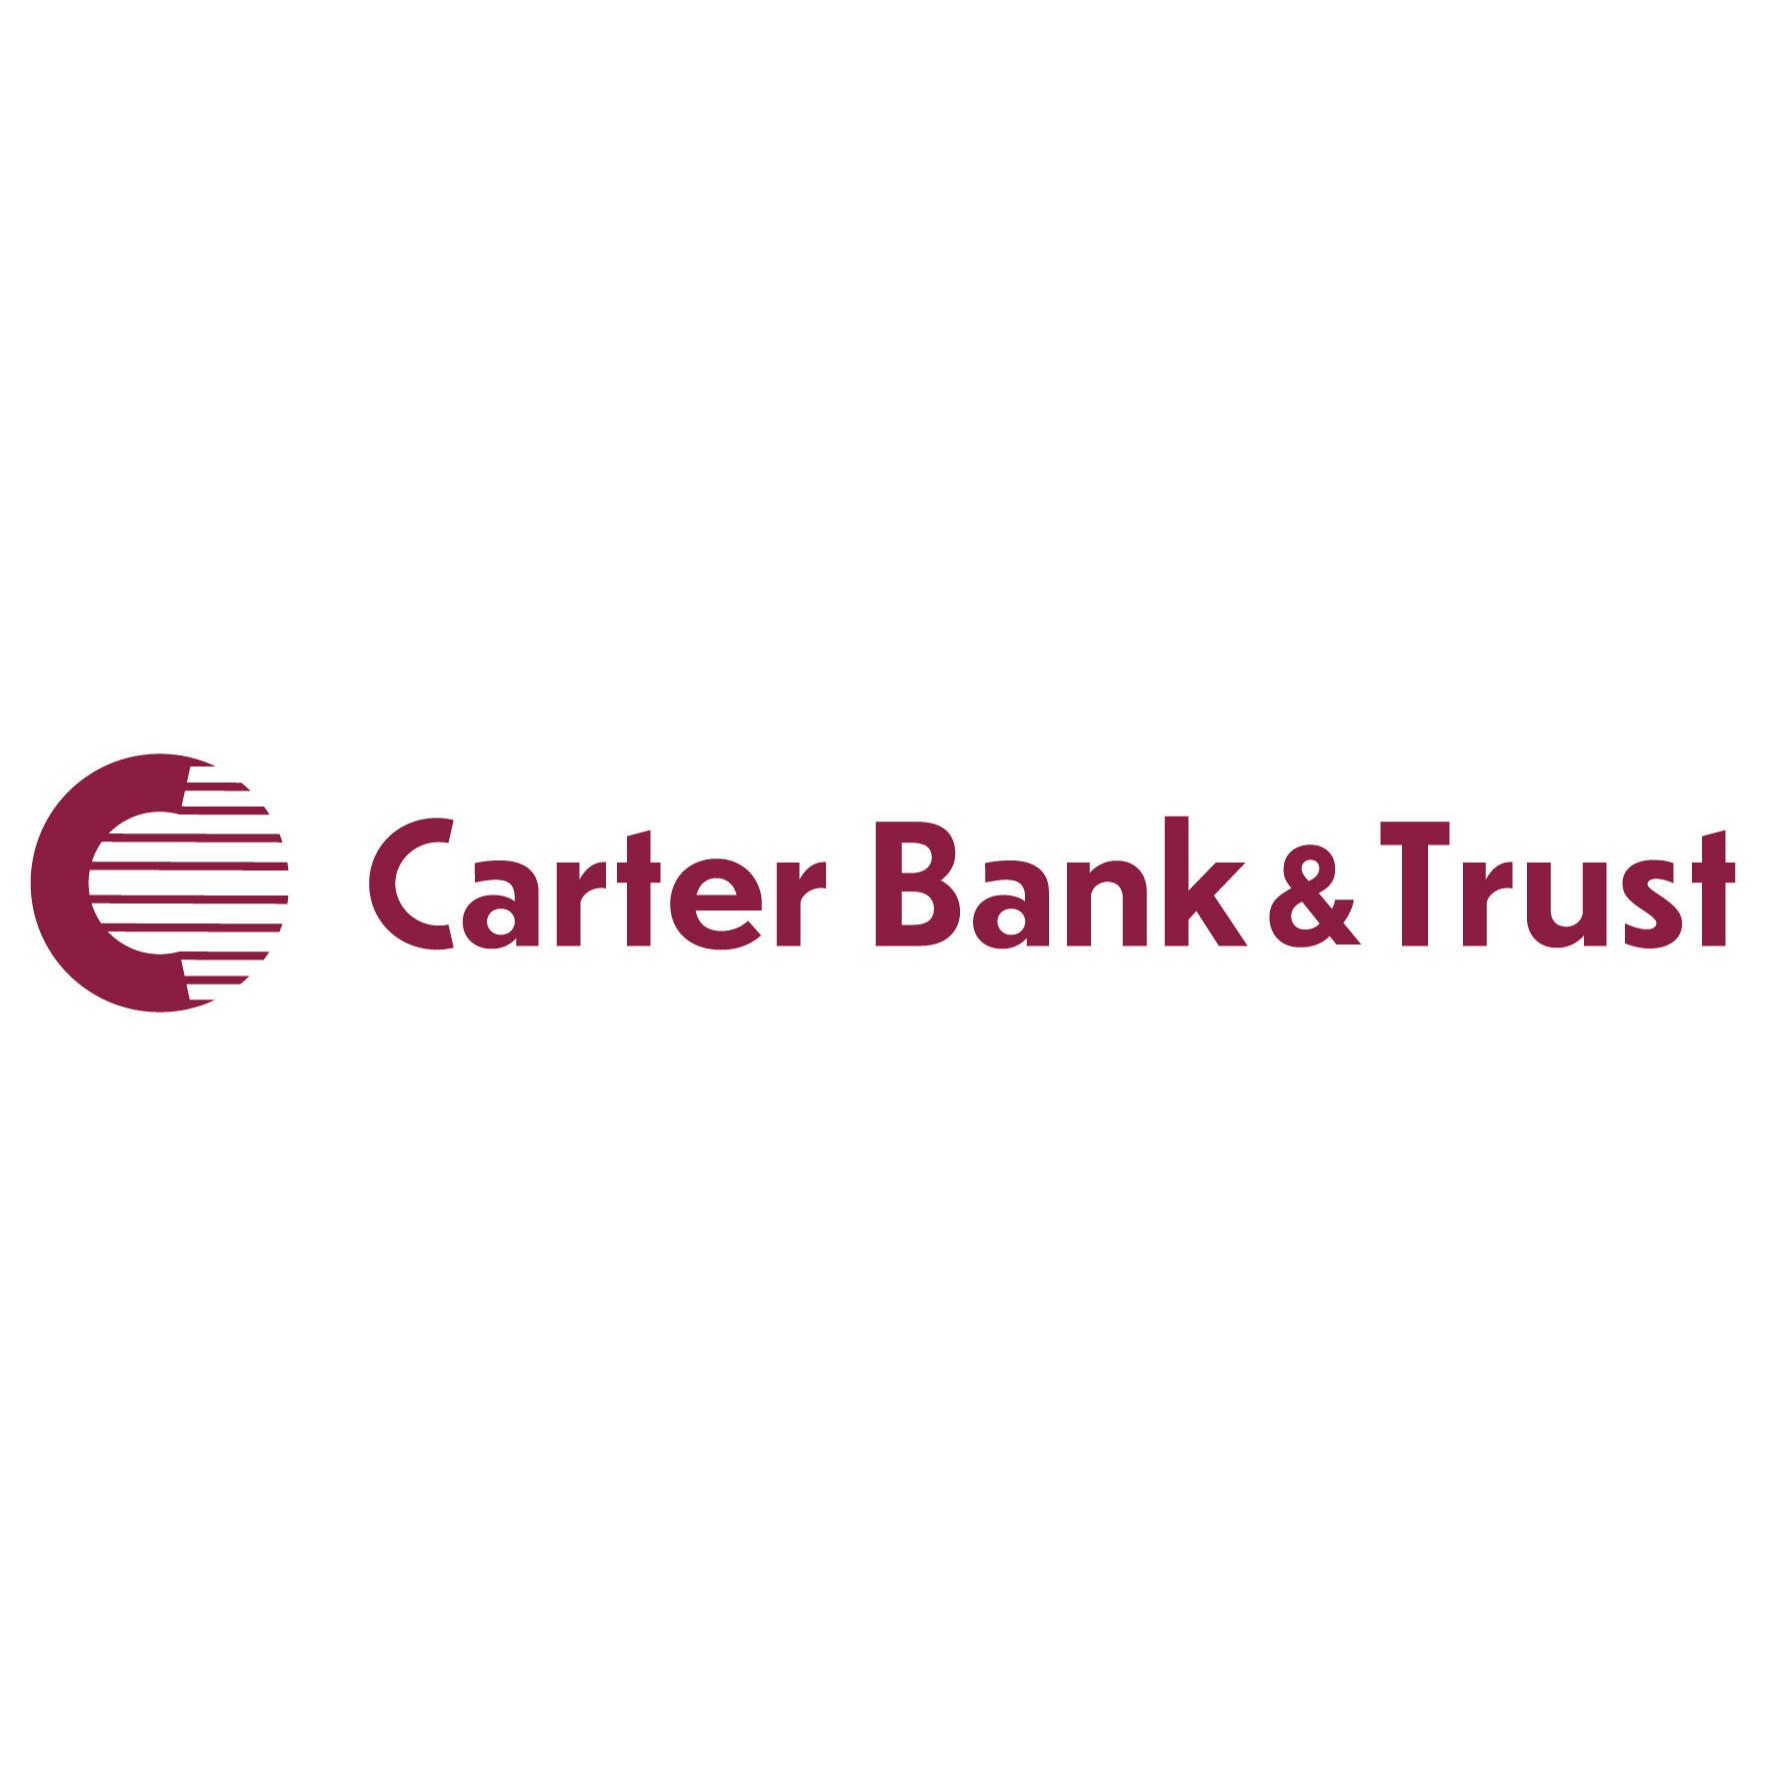 Carter Bank & Trust-Closed - Lynchburg, VA 24501 - (434)528-5220 | ShowMeLocal.com